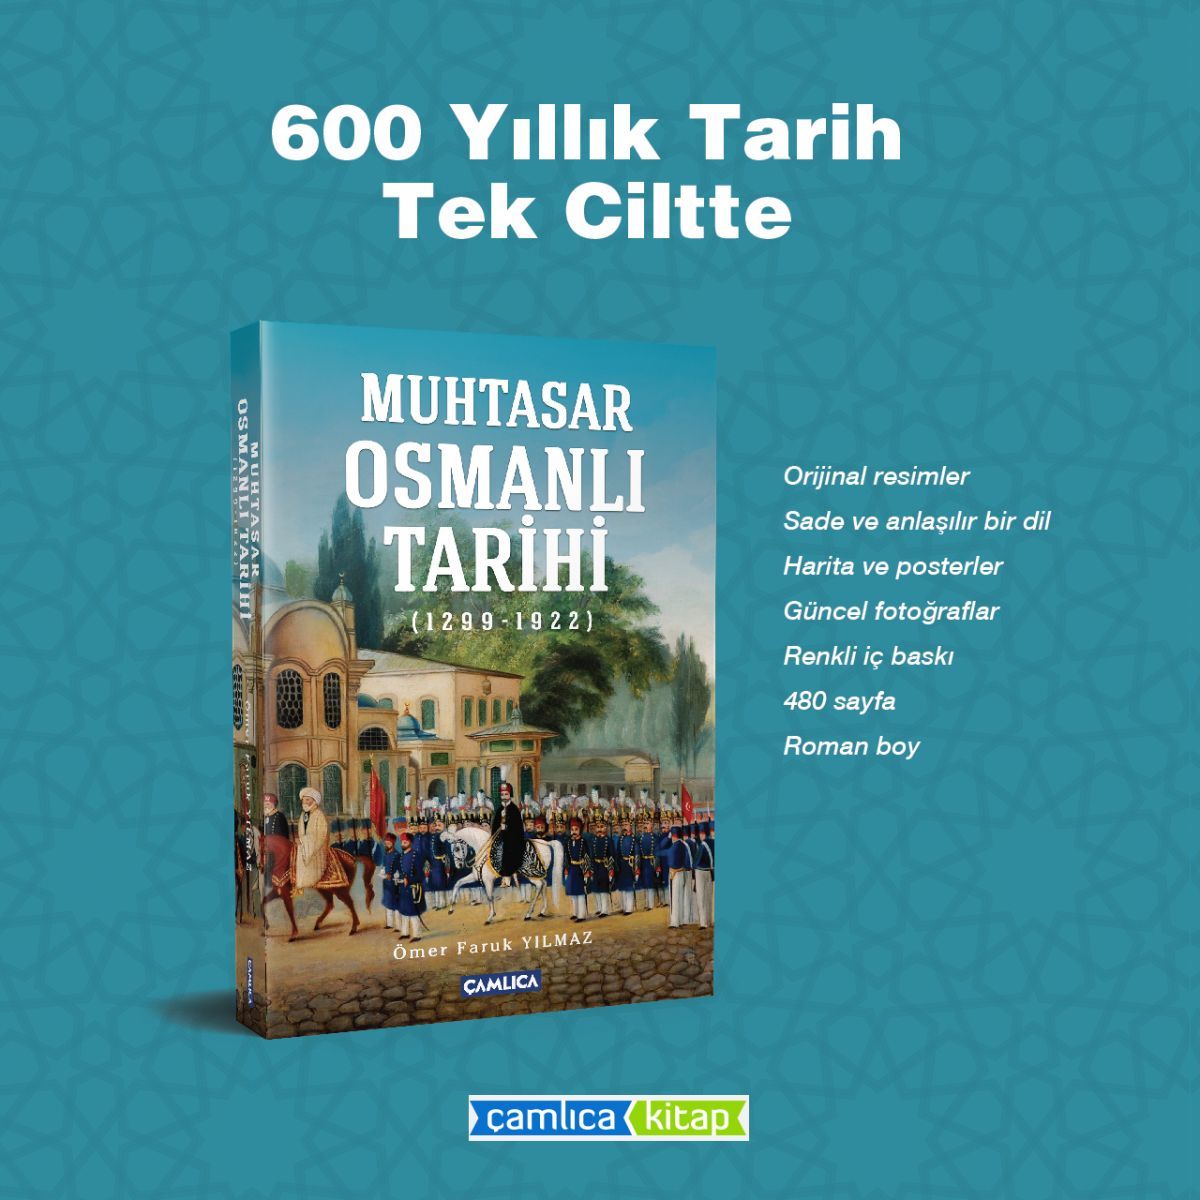 Muhtasar Osmanlı Tarihi, Ömer Faruk Yılmaz